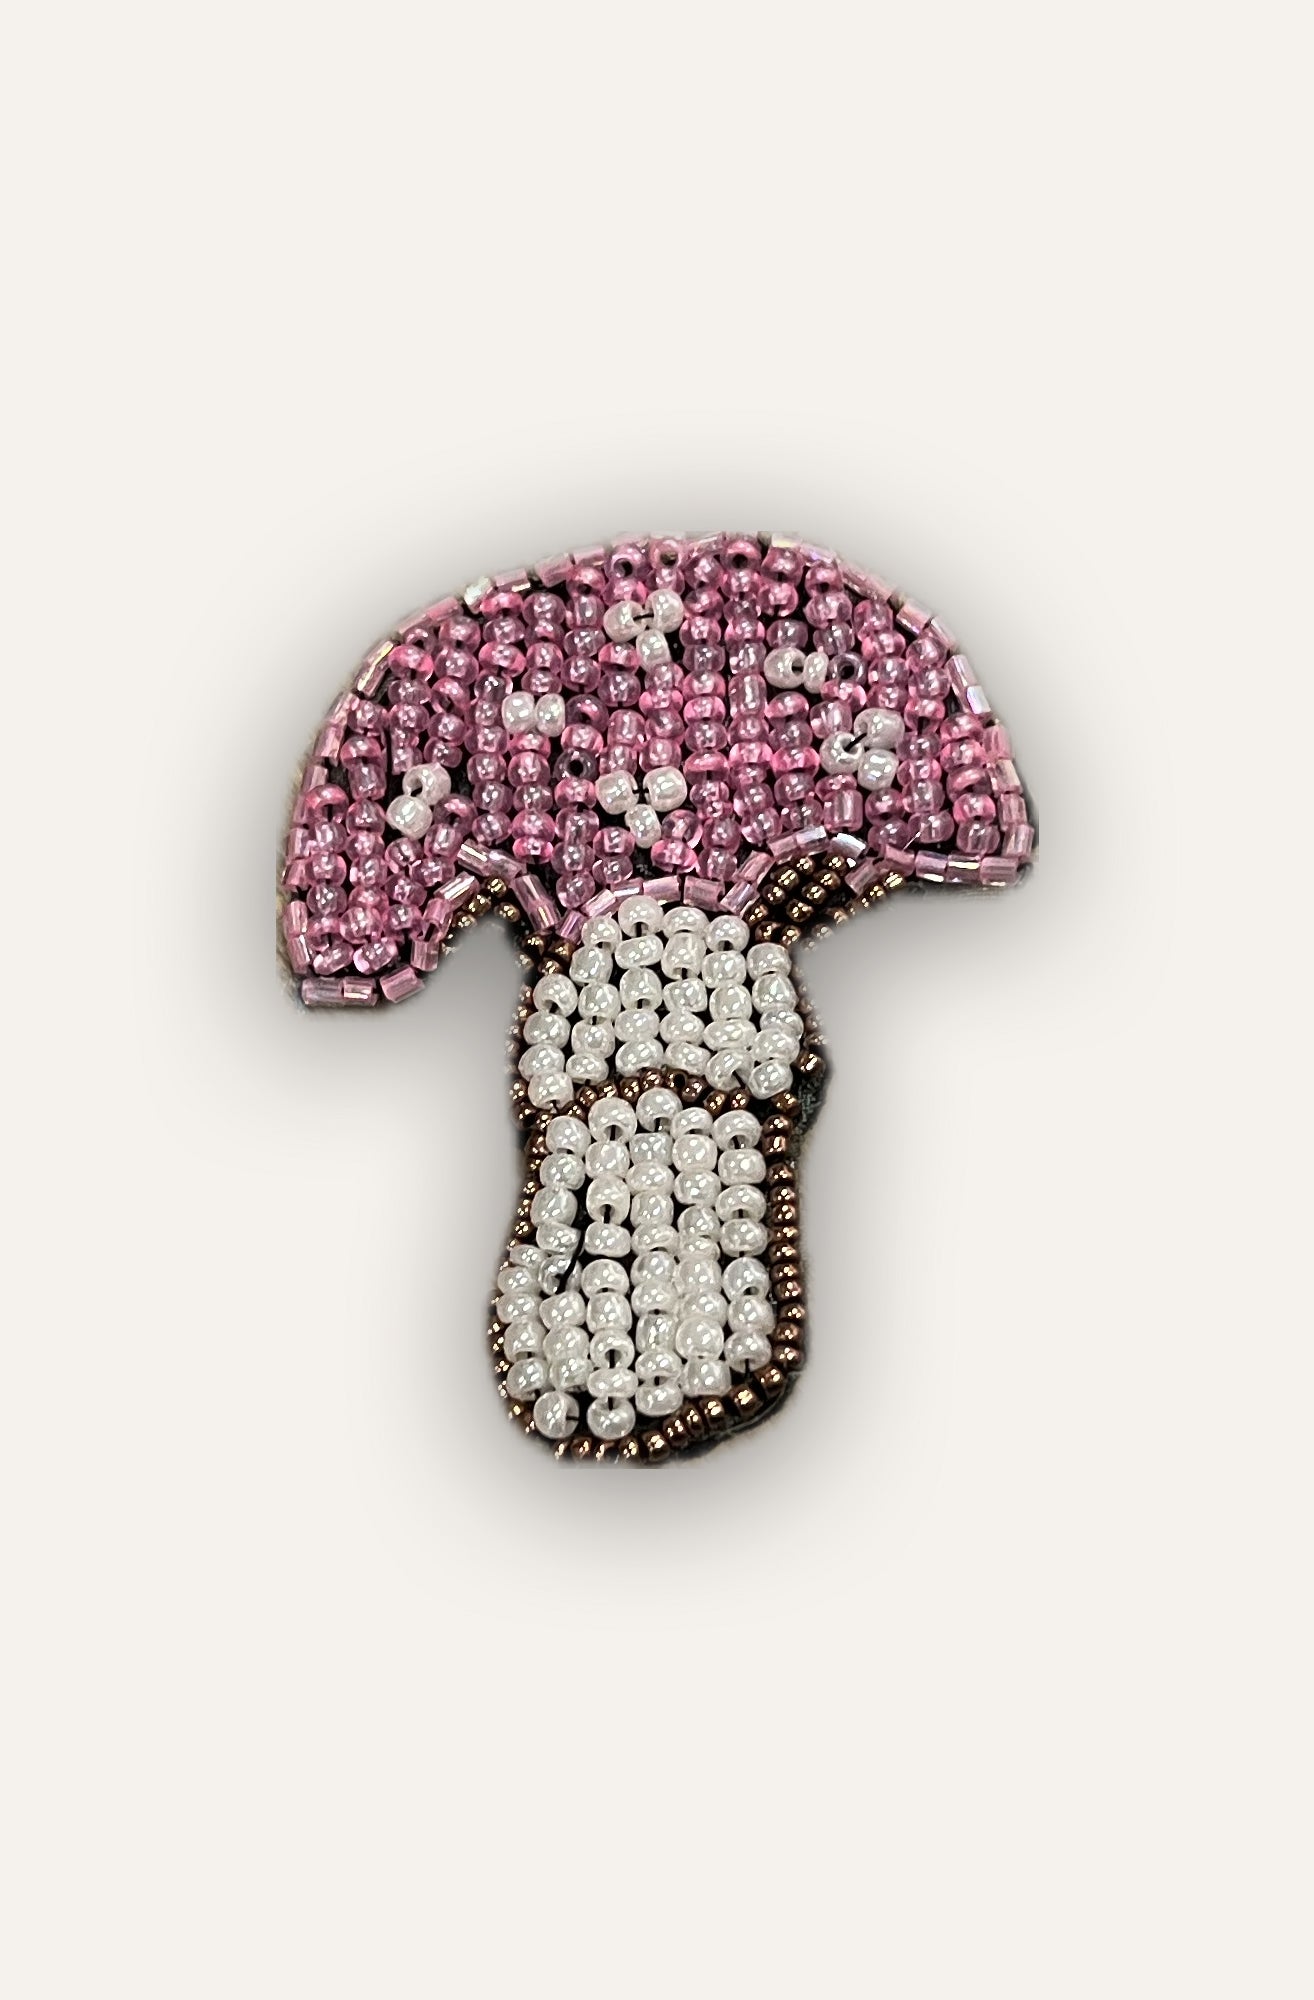 Mushroom Brooch - Pink